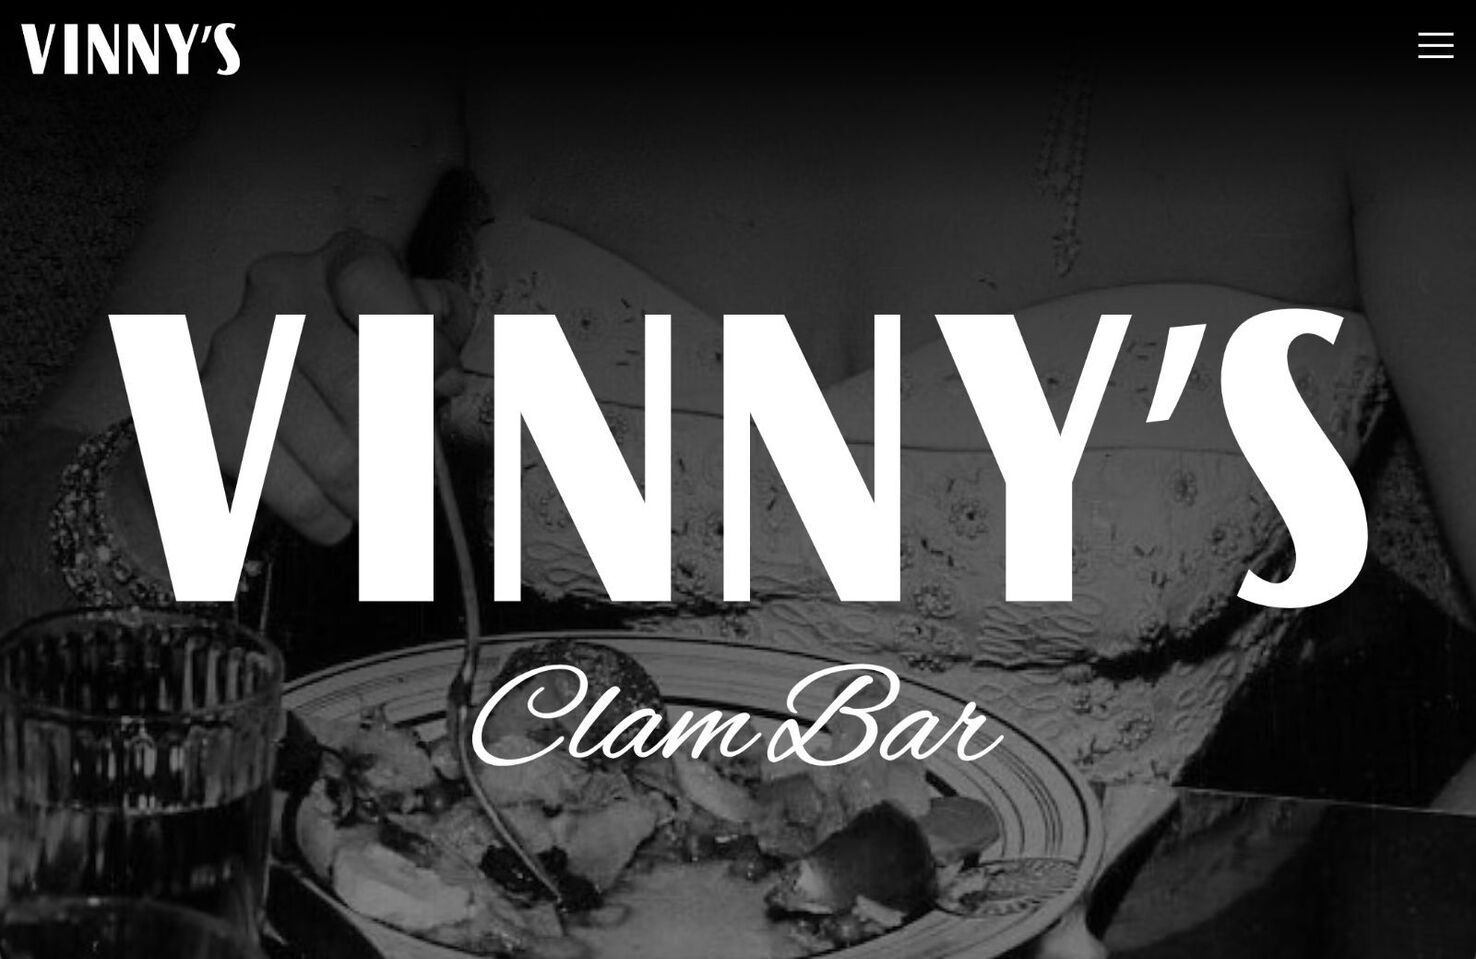 Vinny's Clam Bar